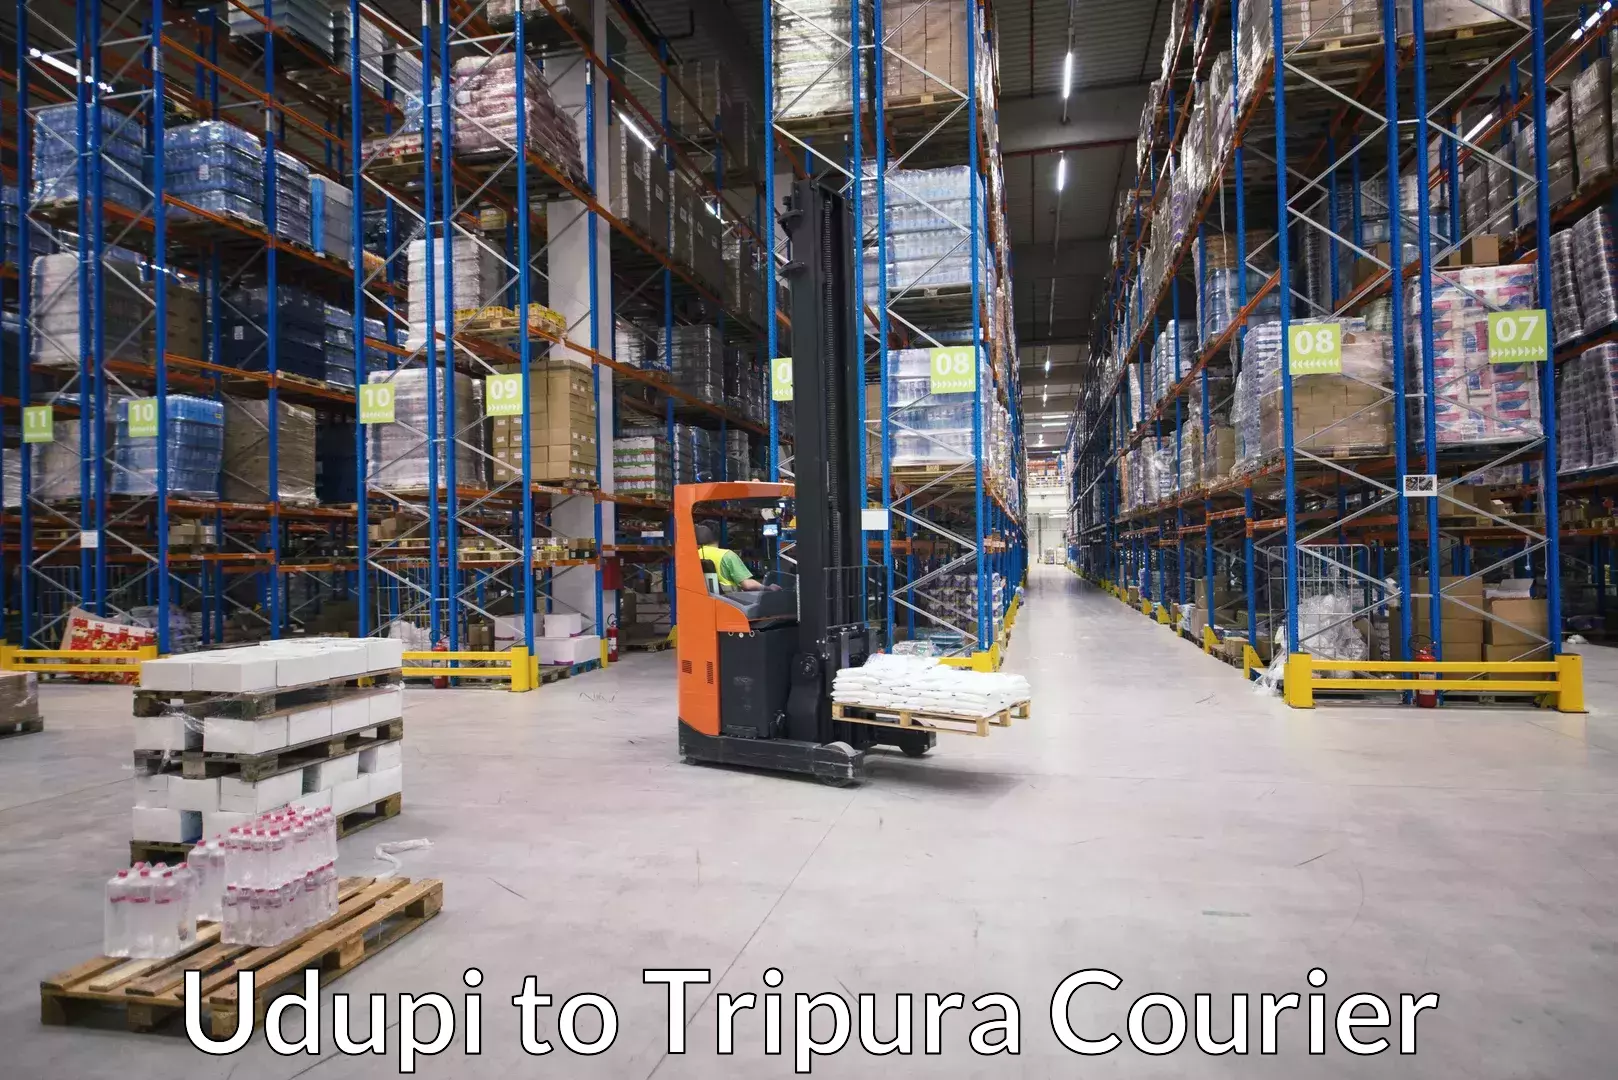 Luggage transfer service Udupi to Udaipur Tripura